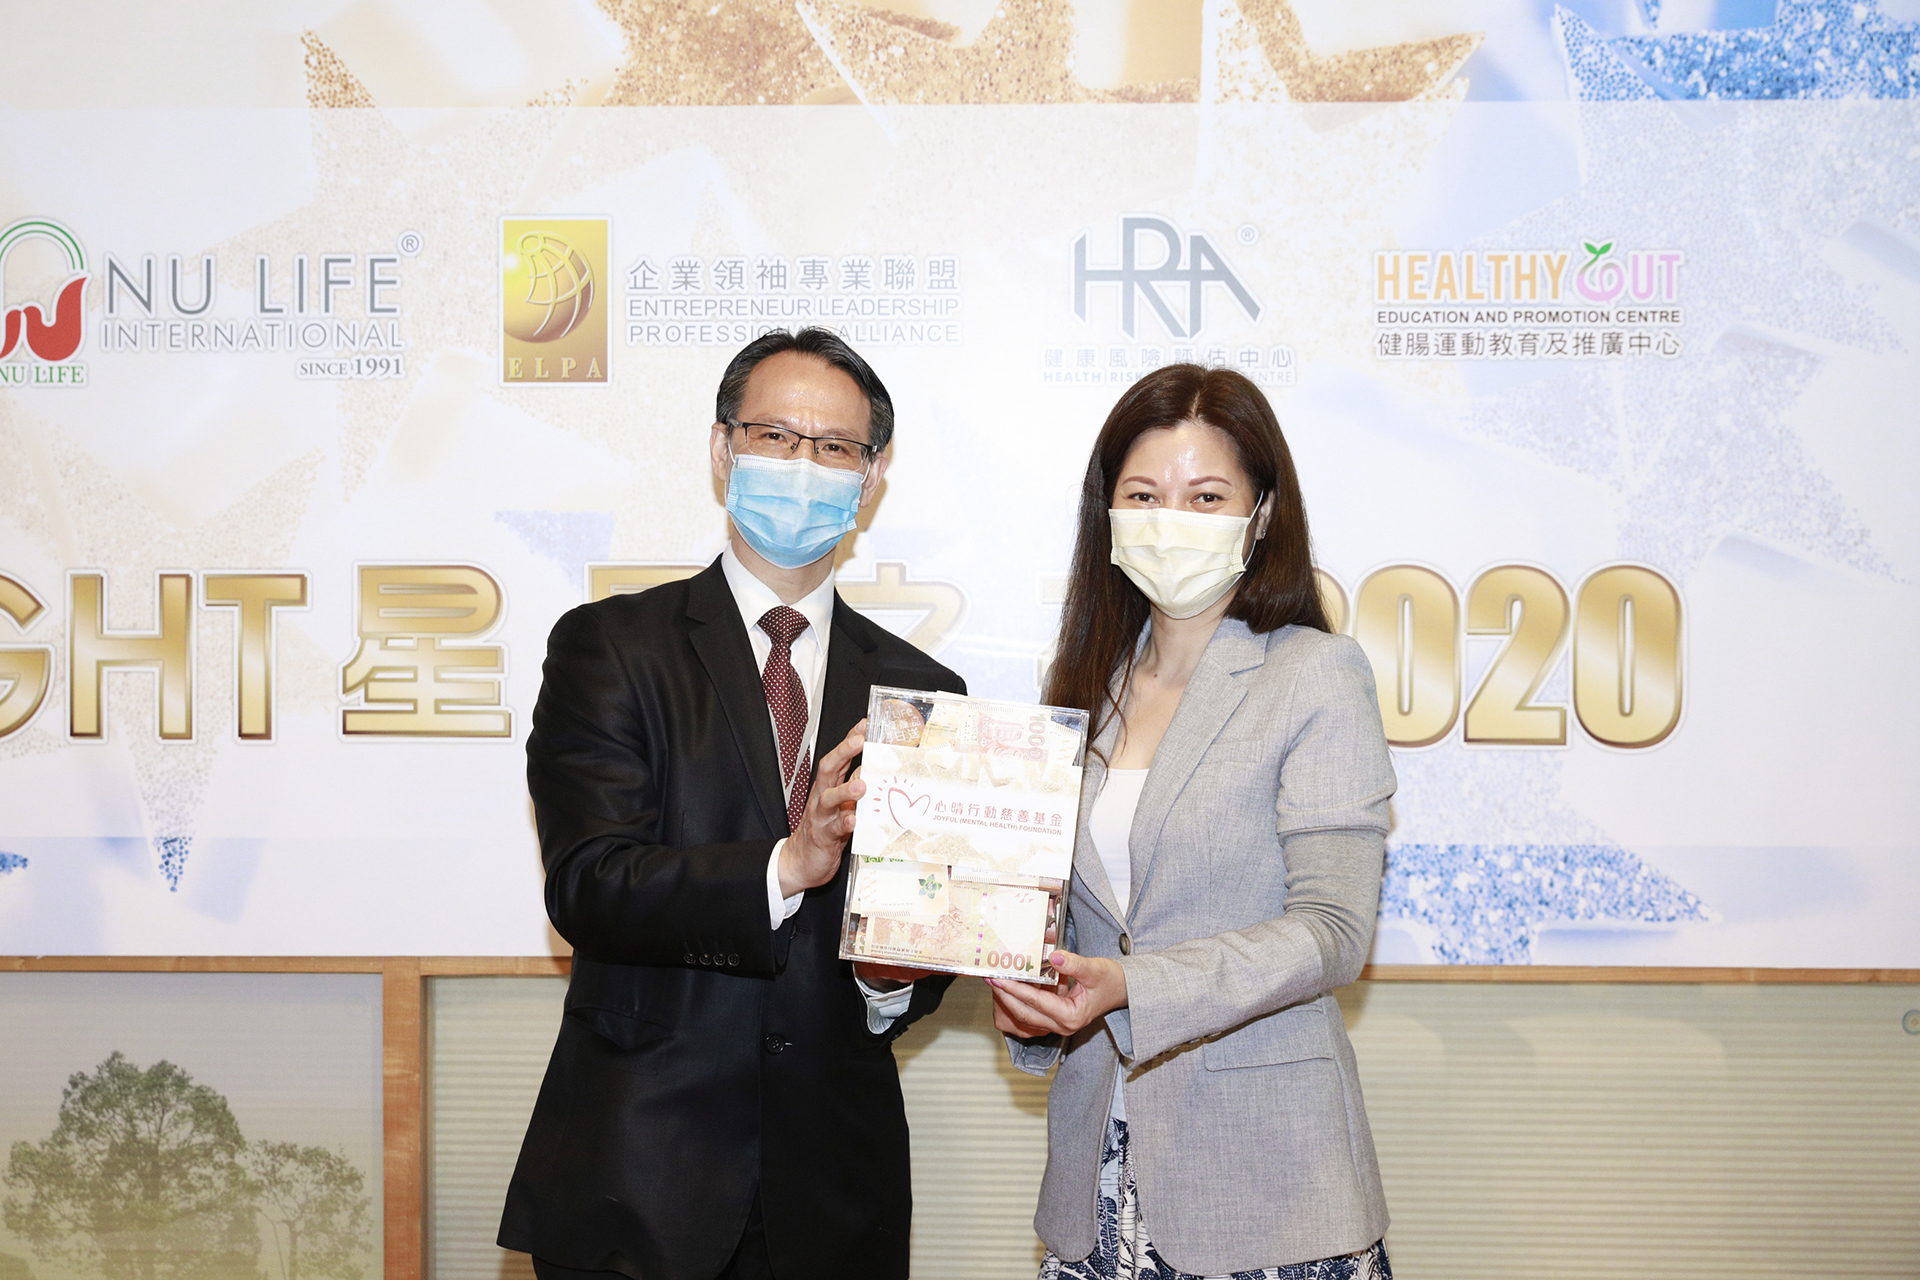 恭賀鄧錦全先生從星級百萬富翁遊戲贏取HK$10,000獎金並與公司合共損助HK$12,000予「心晴行動慈善基金」